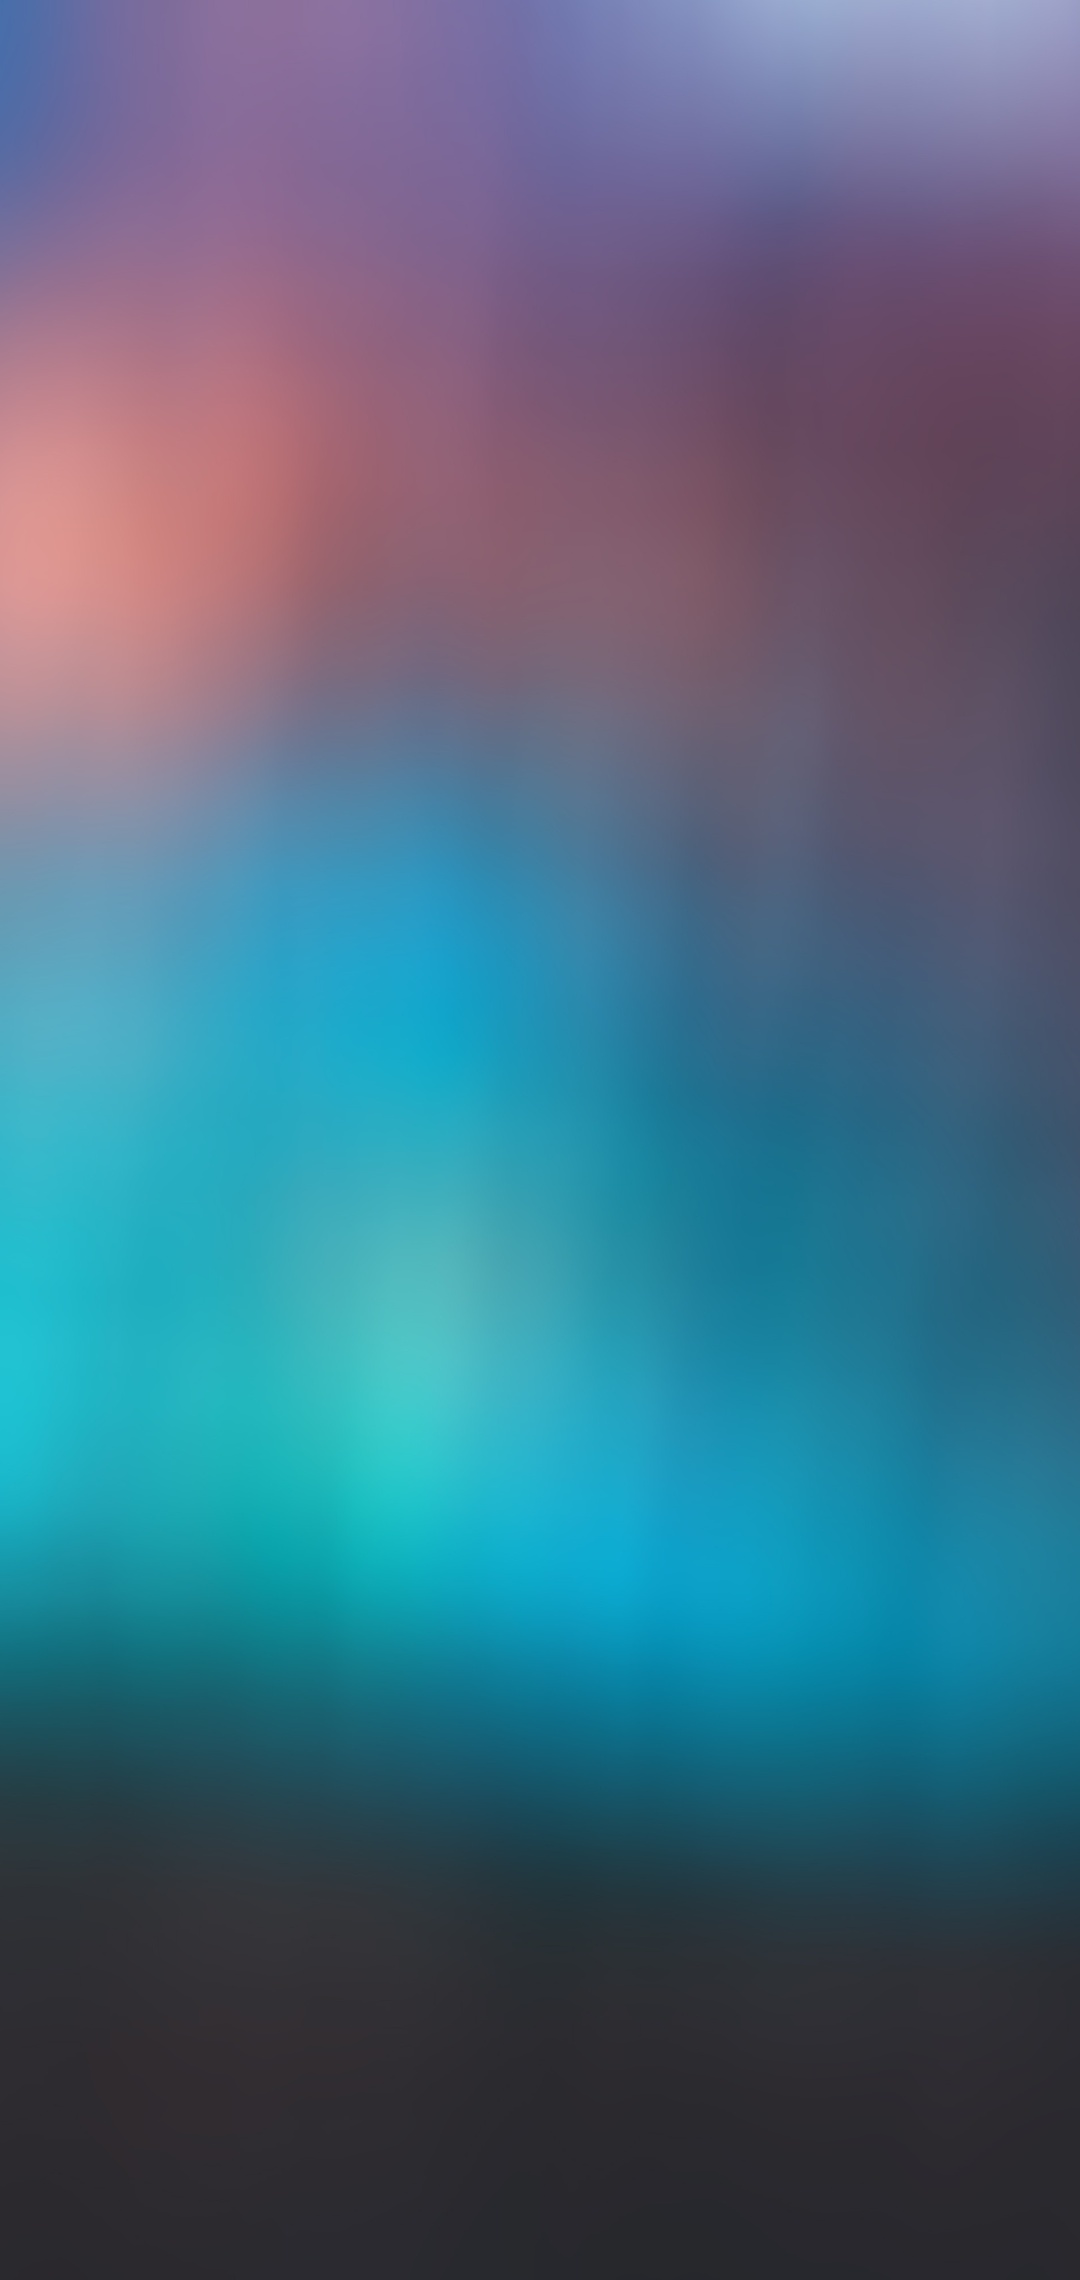 blur-blue-gradient-cool-background-sp.jpg